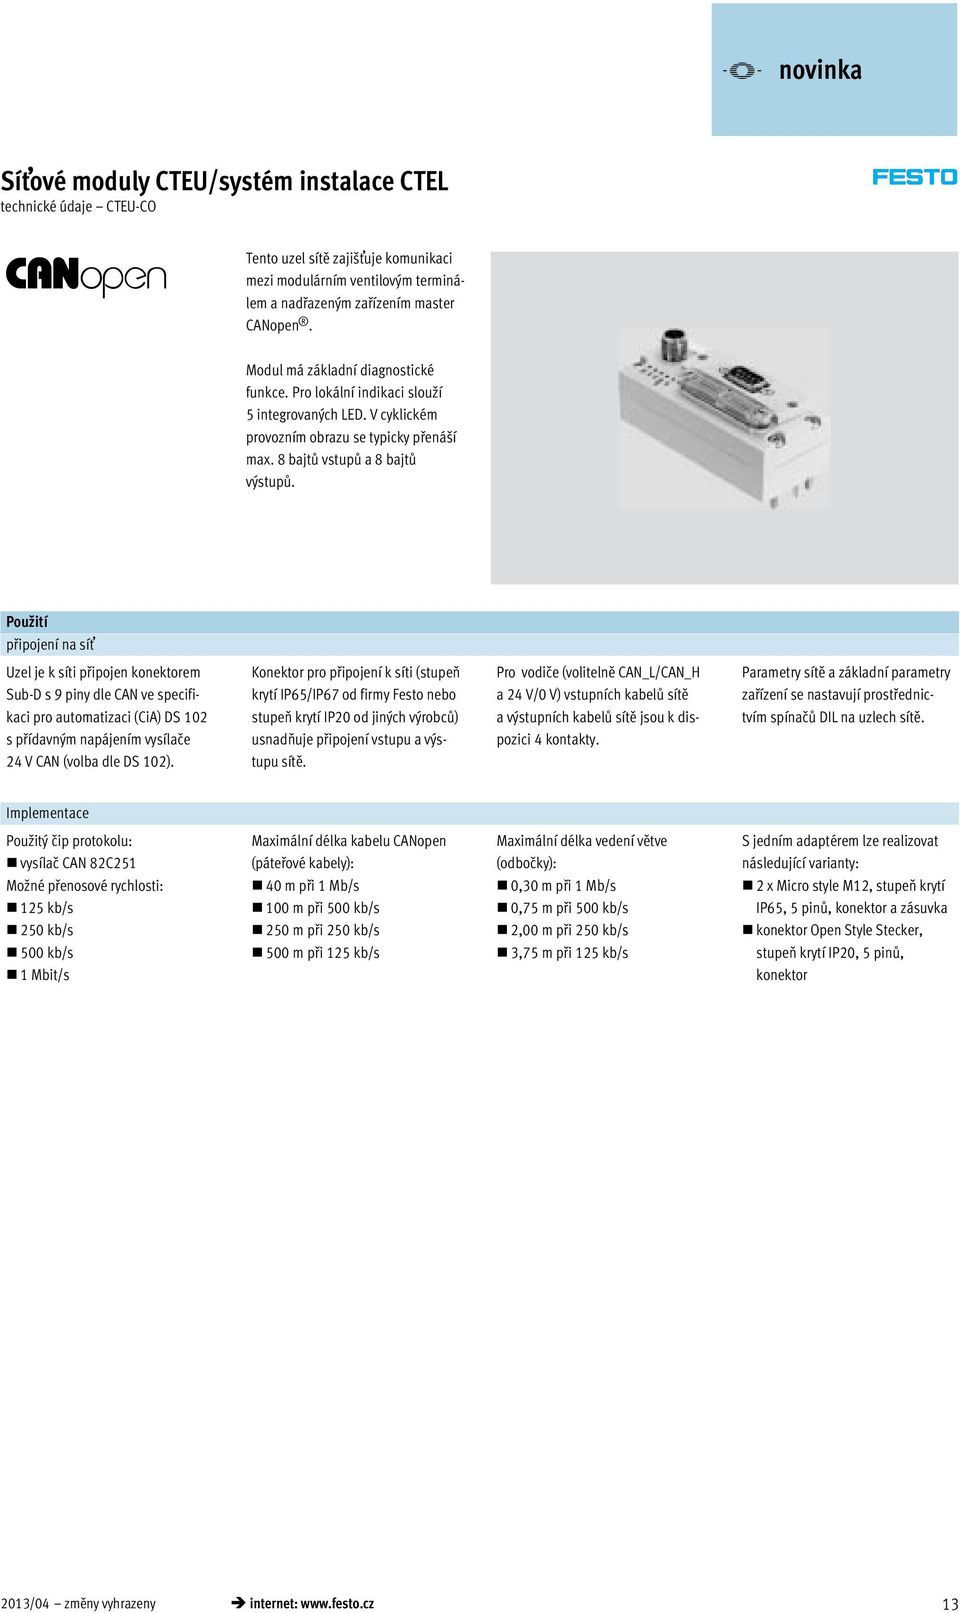 Použití připojení na síť Uzel je k síti připojen konektorem Sub-D s 9 piny dle CAN ve specifikaci pro automatizaci (CiA) DS 102 s přídavným napájením vysílače 24 V CAN (volba dle DS 102).